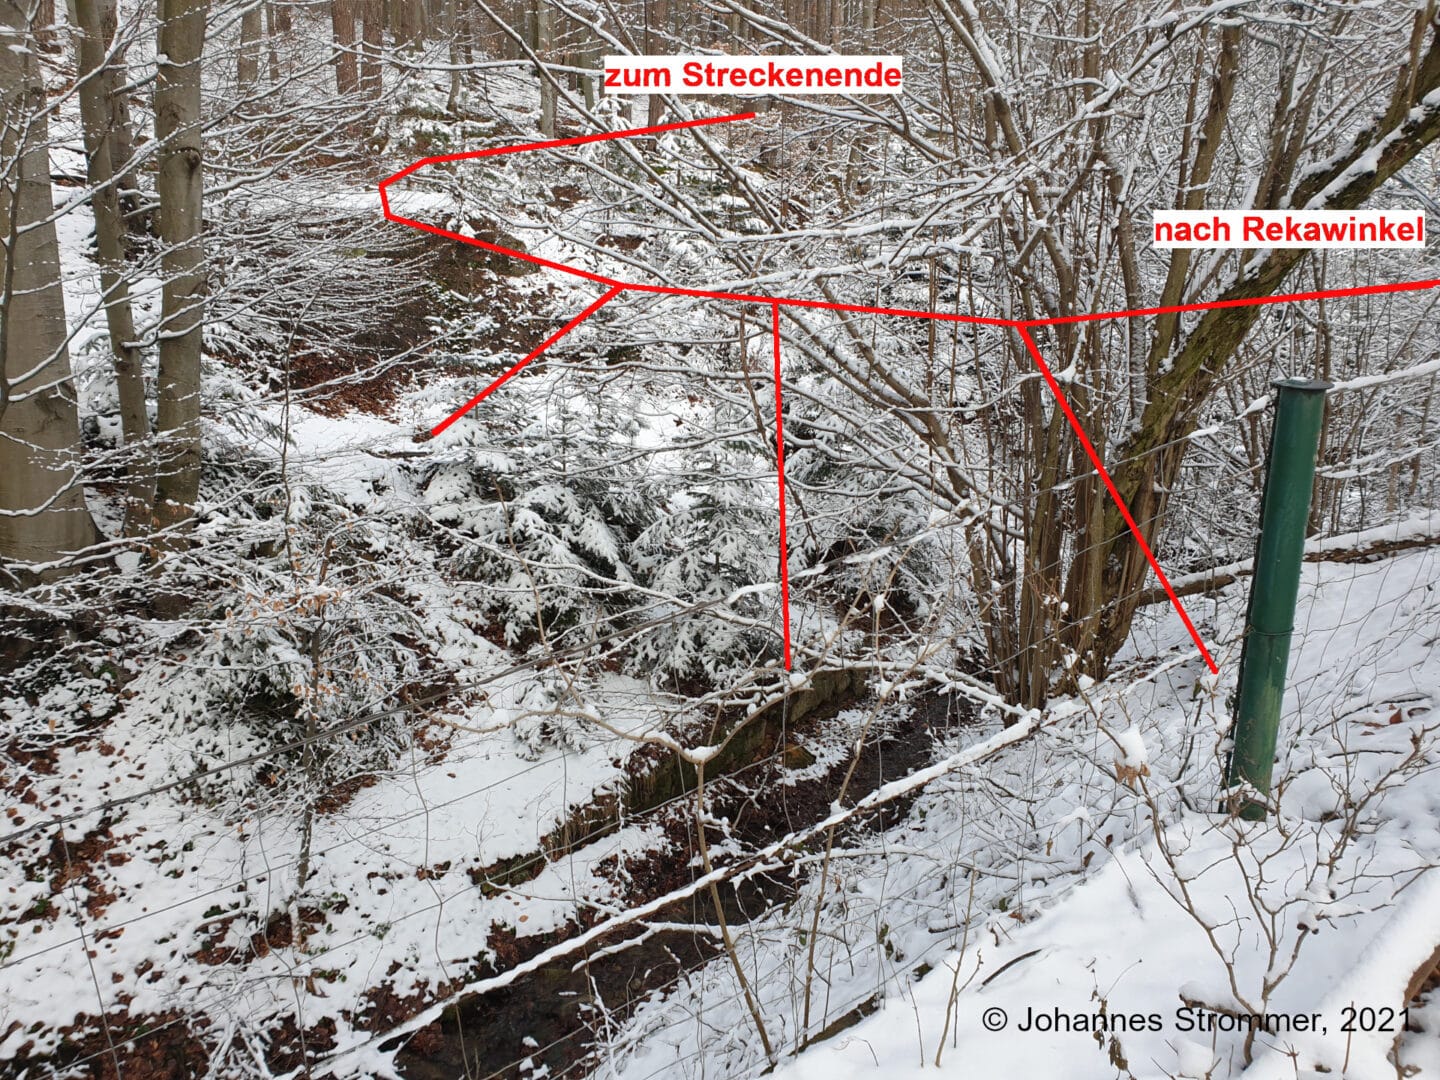 Hier befand sich einst eine recht imposante Brücke. Die Fundamente der Steher sind noch größtenteils vorhanden, wie die folgenden Bilder zeigen (Waldbahn Rekawinkel).